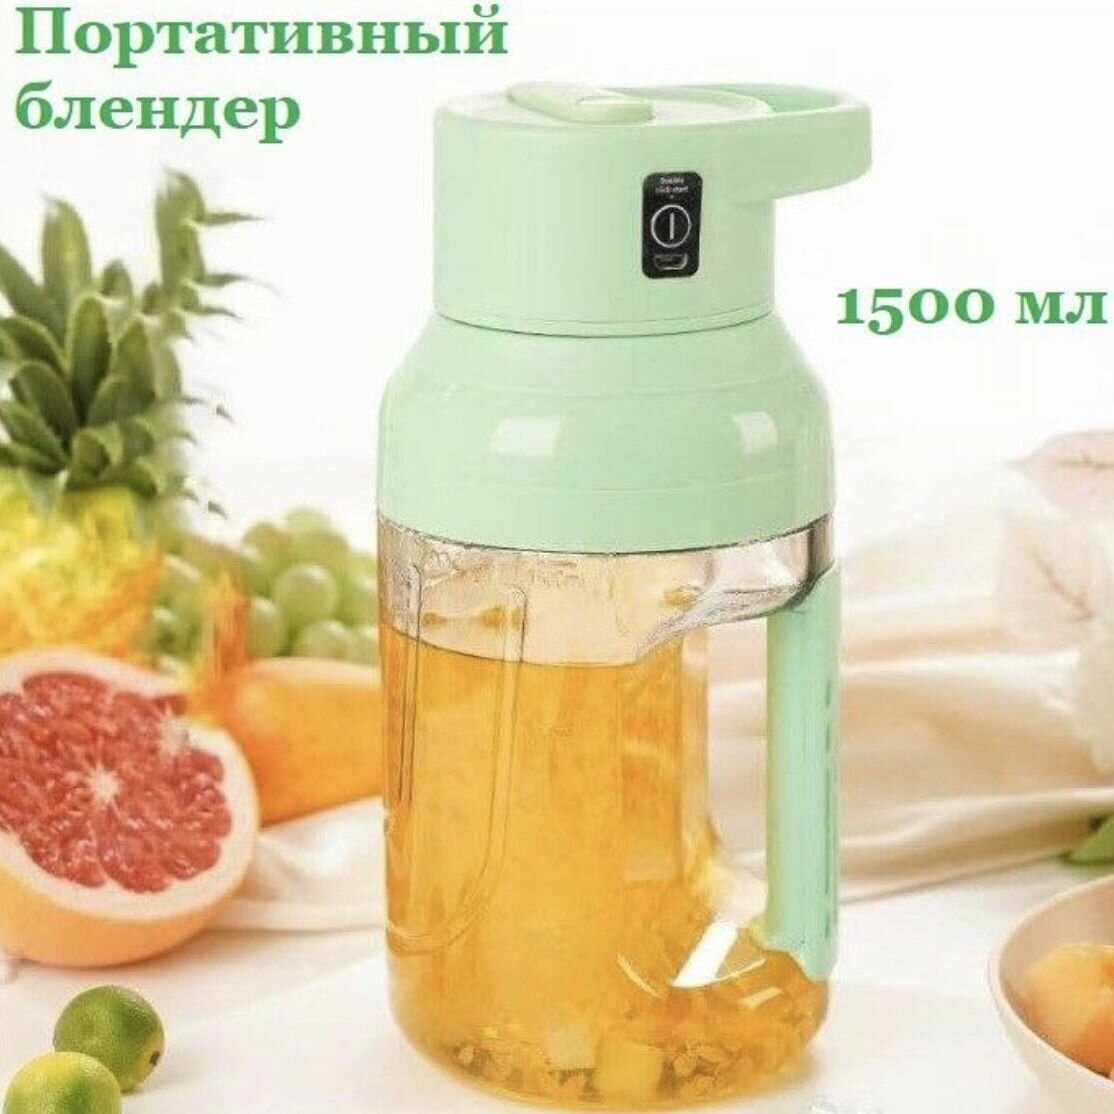 Портативный блендер миксер для приготовления сока коктейлей емкостью 1500 мл. Зеленый.